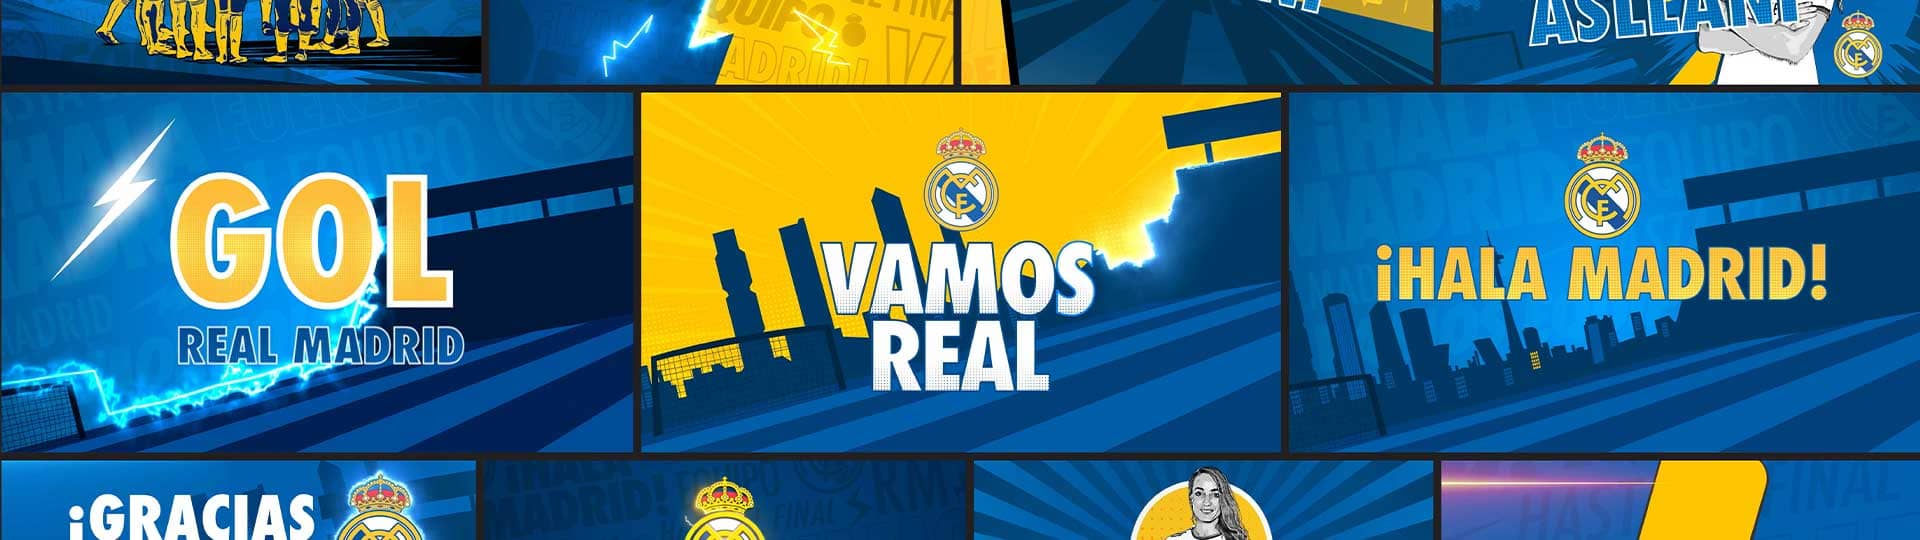 Real Madrid Femenino: Stadium Graphics Package.